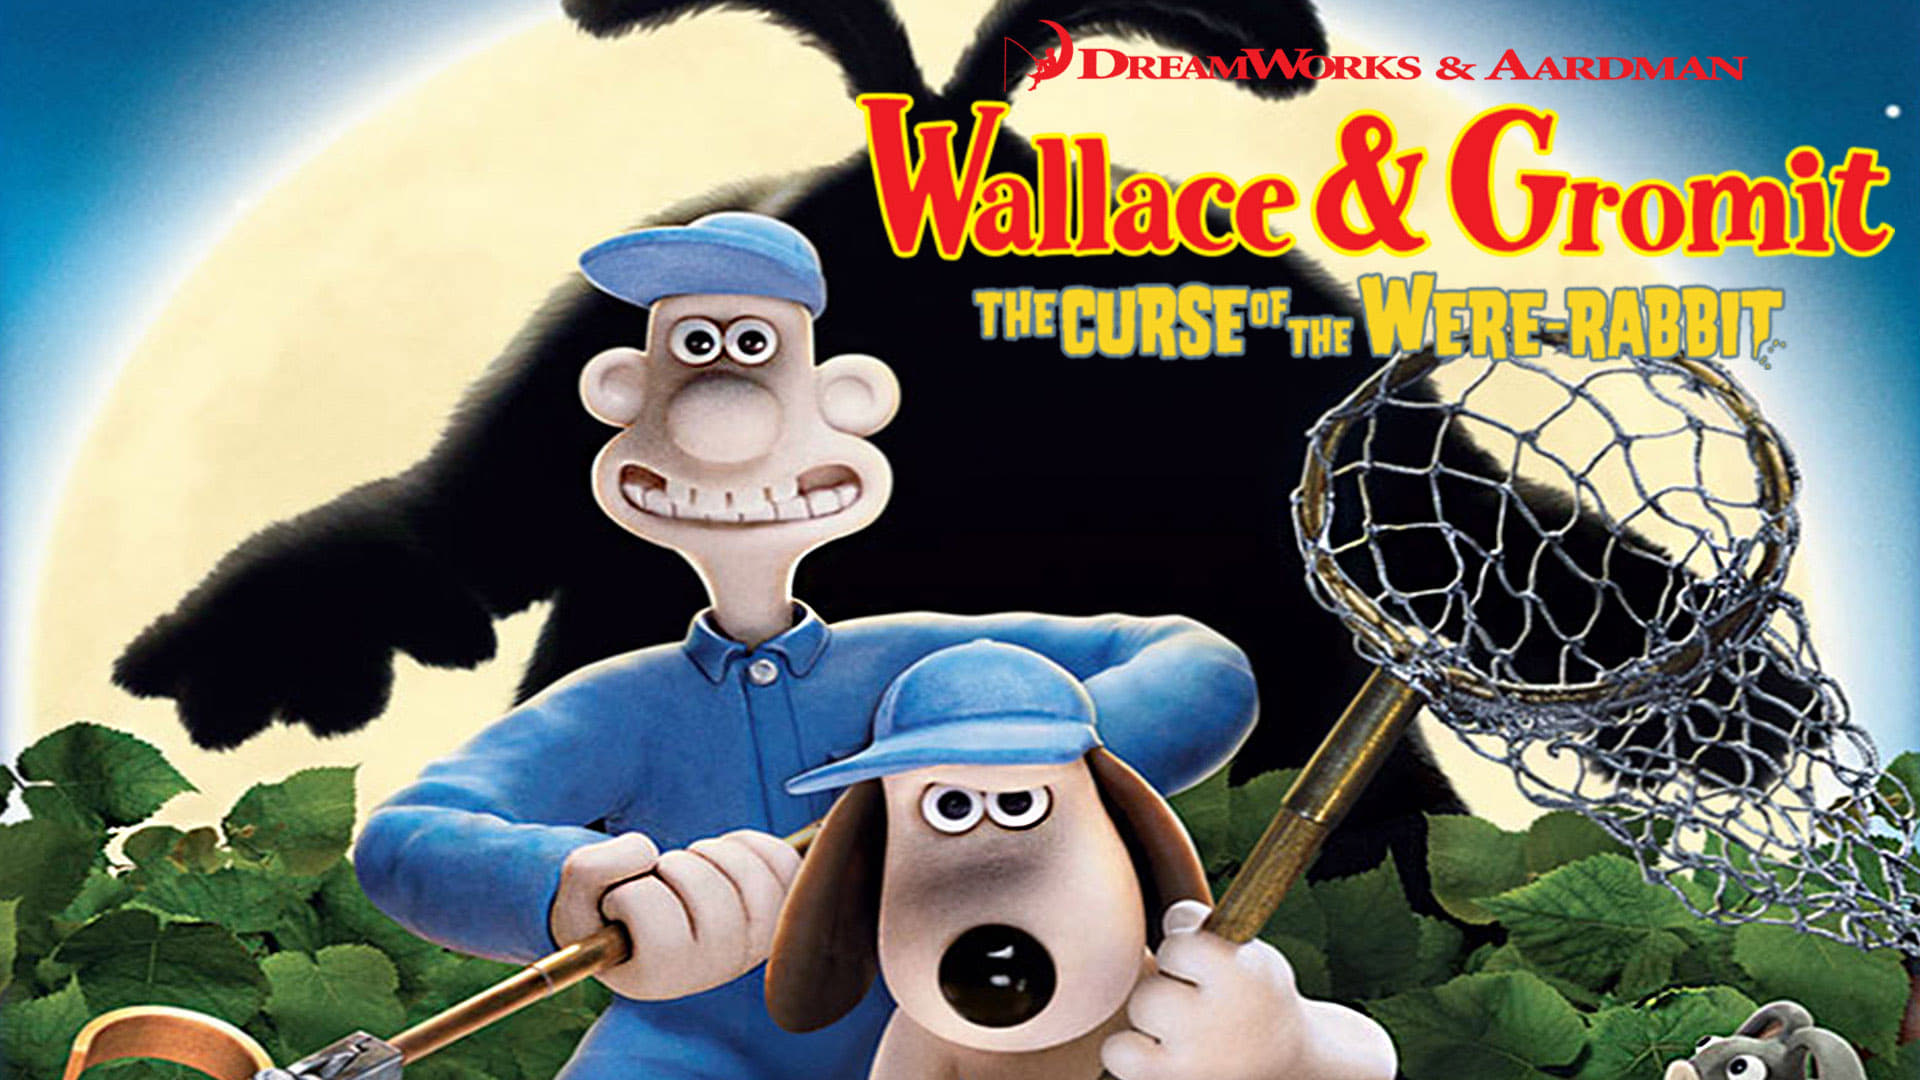 Wallace & Gromit: Kanin kirous